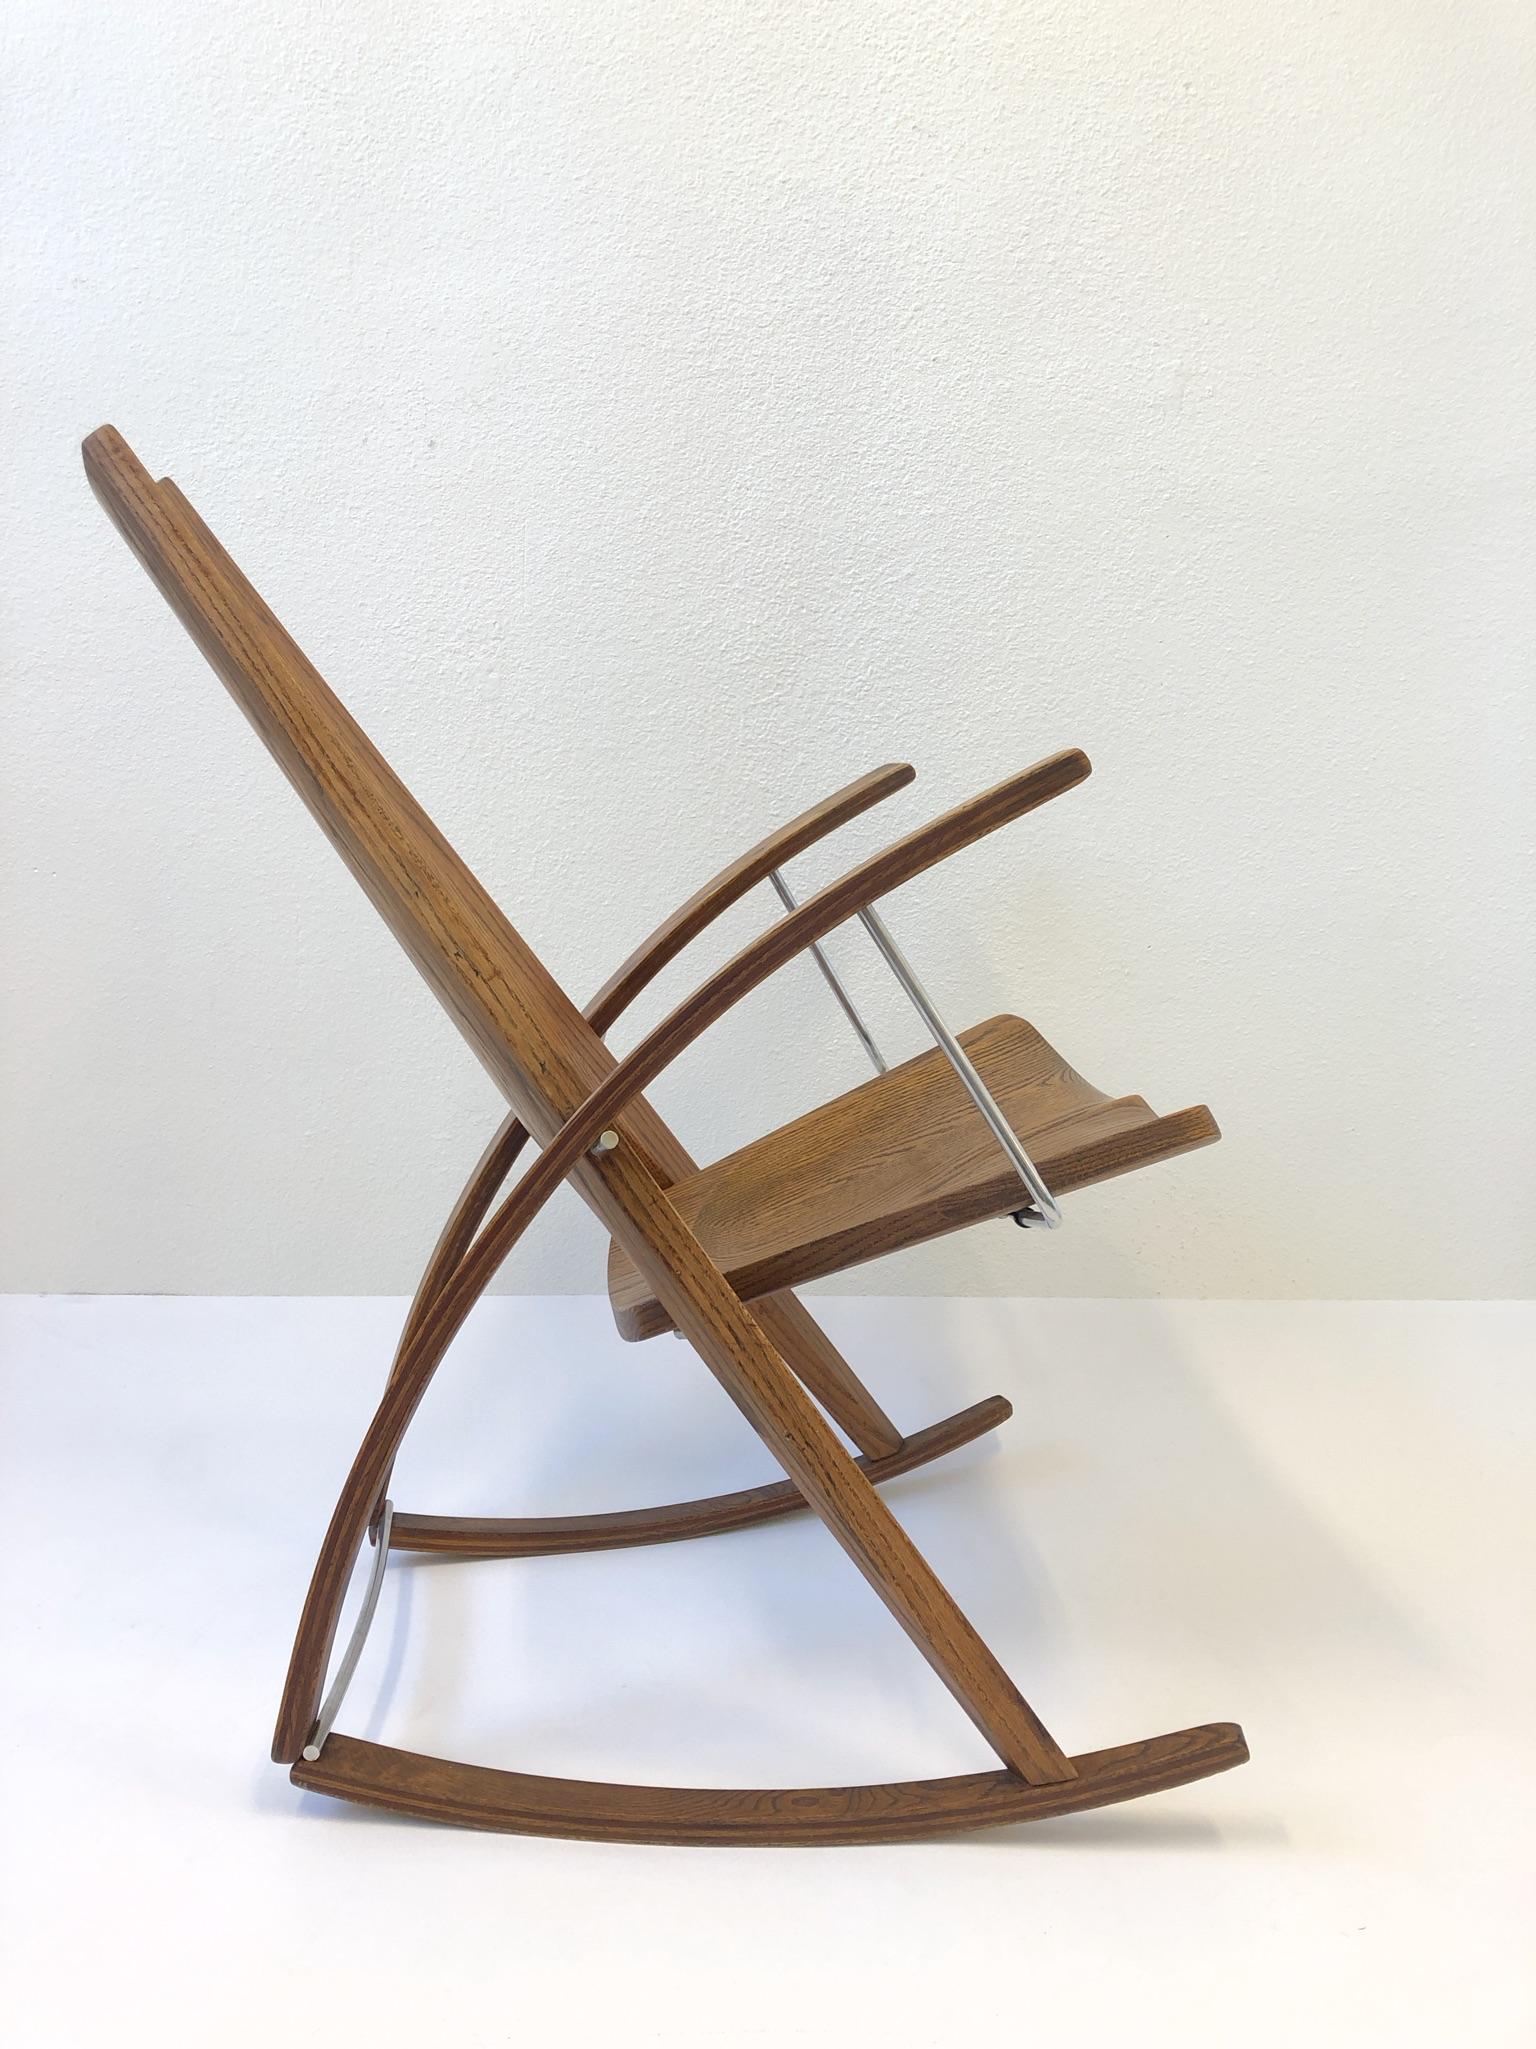 Un étonnant fauteuil à bascule de studio des années 1980 par Leon Mayer. La chaise est signée à la main par Leon Mayer, datée de 1980 et numérotée 169. Le fauteuil à bascule est construit en chêne massif et en acier inoxydable poli.
Dimensions